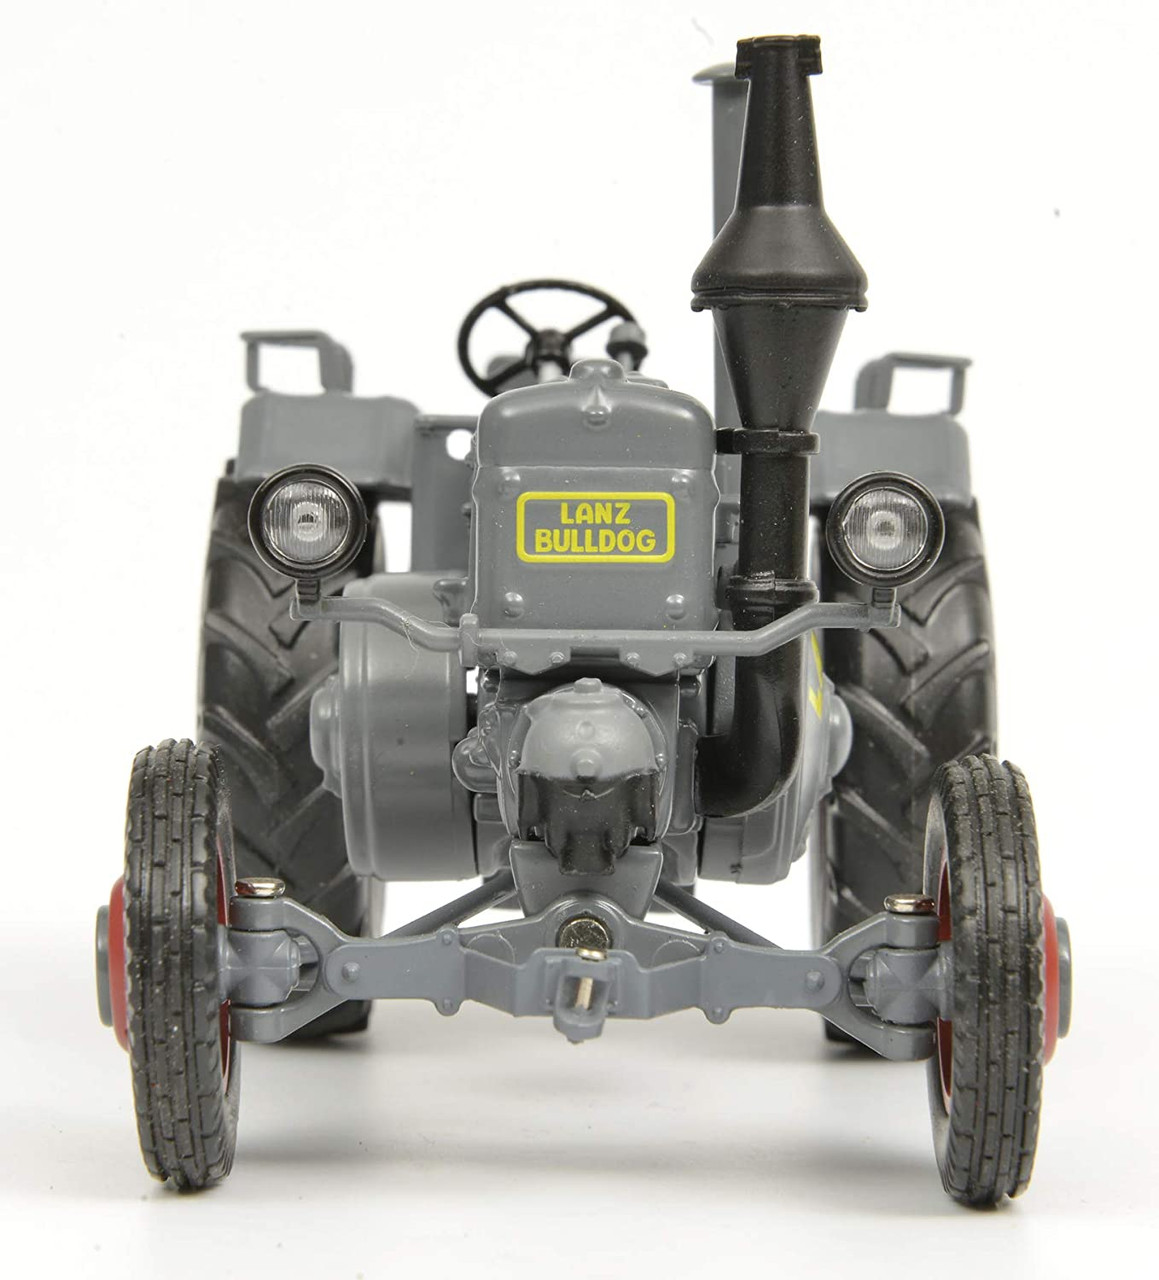 1/32 Schuco Lanz Bulldog with Cart (Grey & Beige) Diecast Model